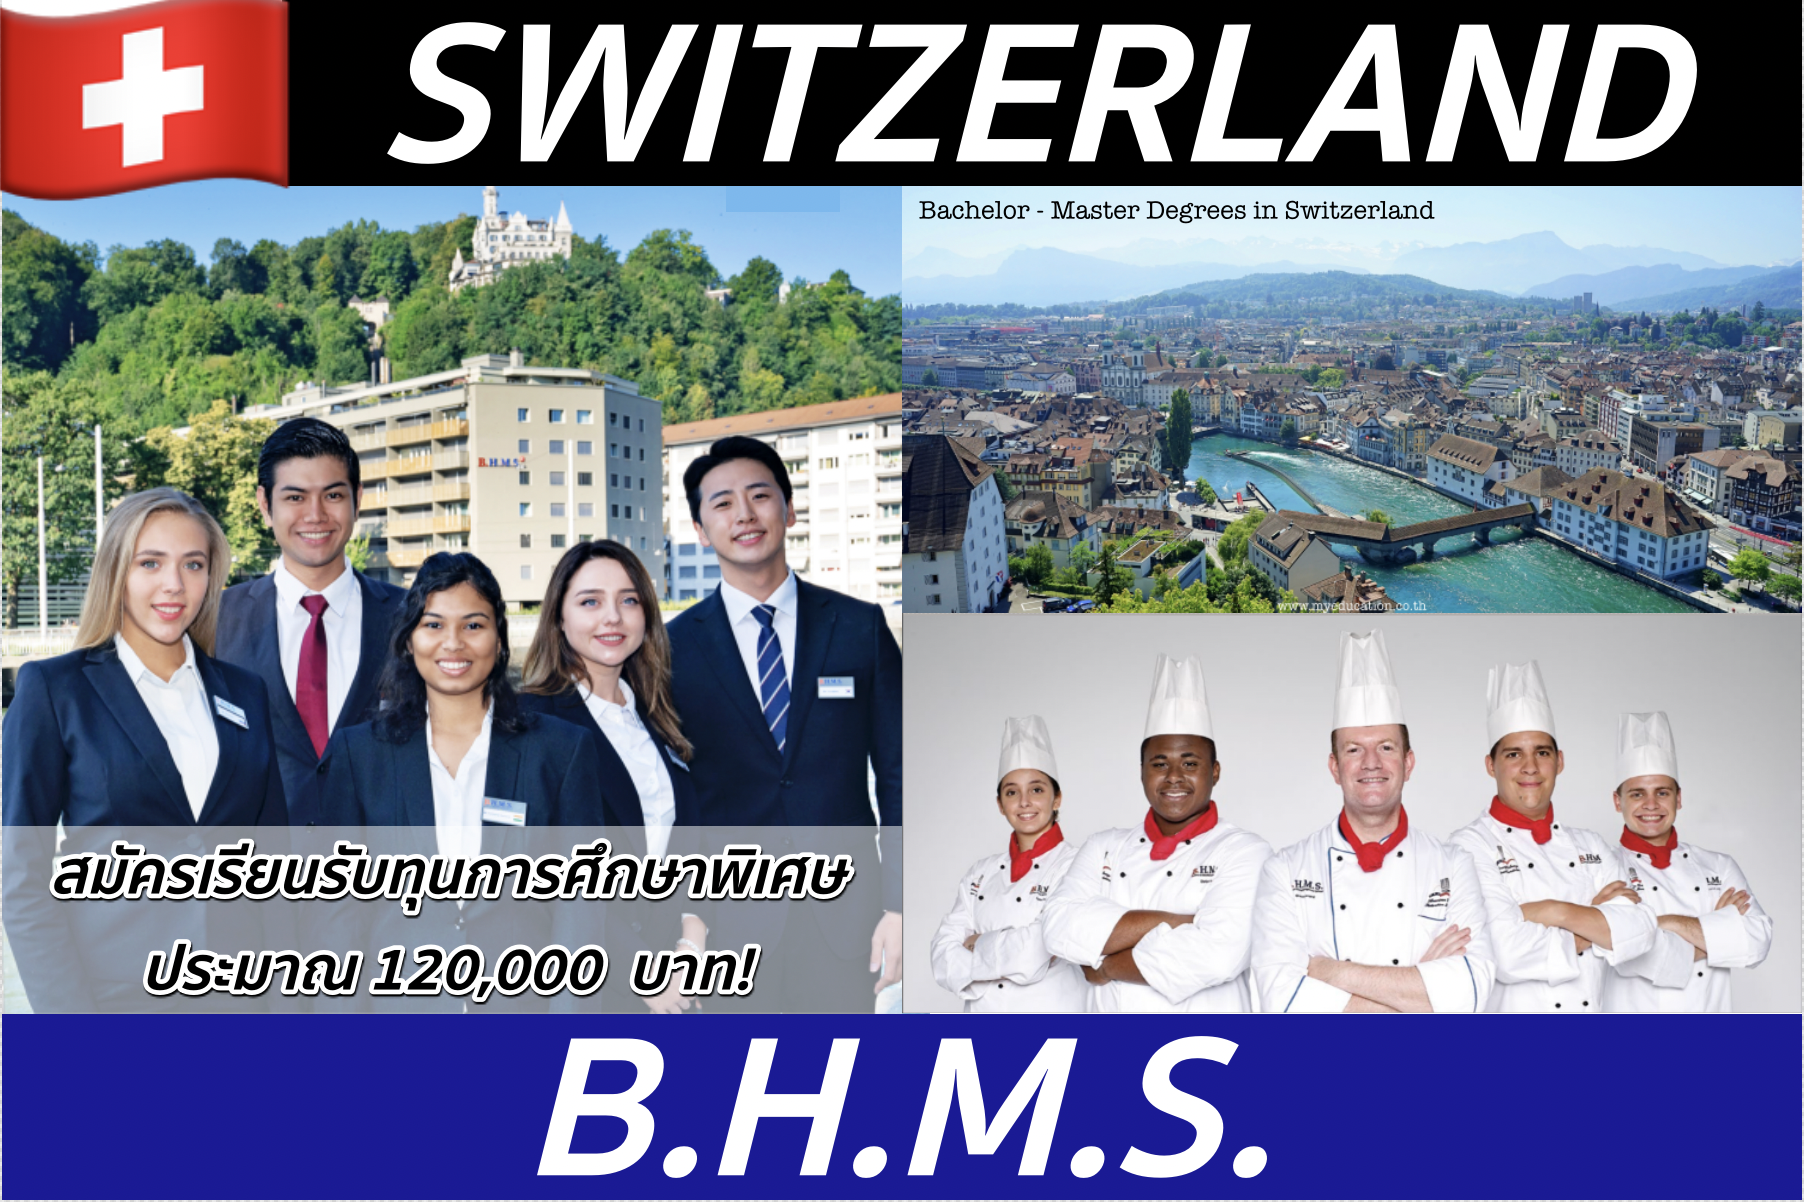 เรียน+ฝึกงานเงินเดือน 85,000! ป.ตรี-ป.โทที่ BHMS, Switzerland *สมัครรับทุนการศึกษาทุกหลักสูตร!*